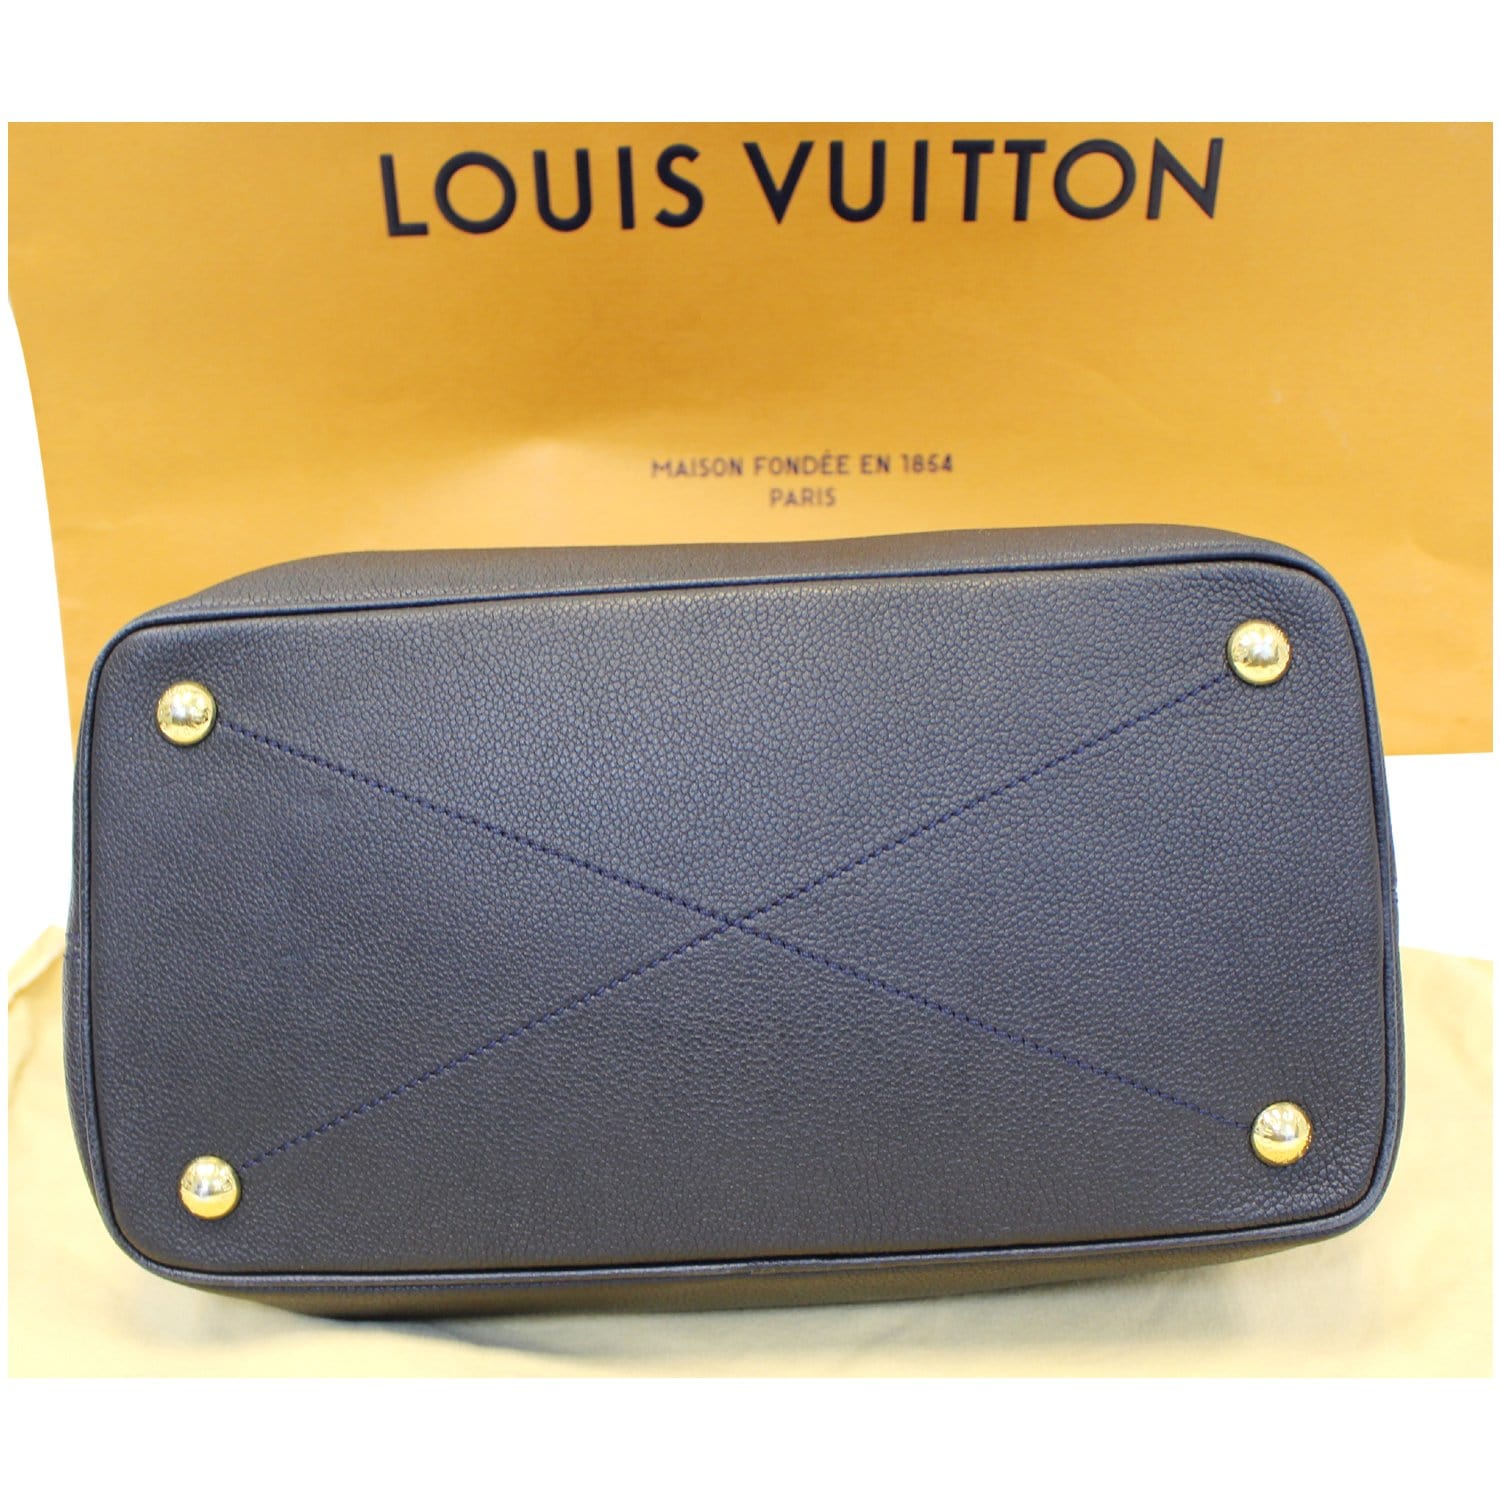 Magnifique sac Louis Vuitton citadine monogramme noir